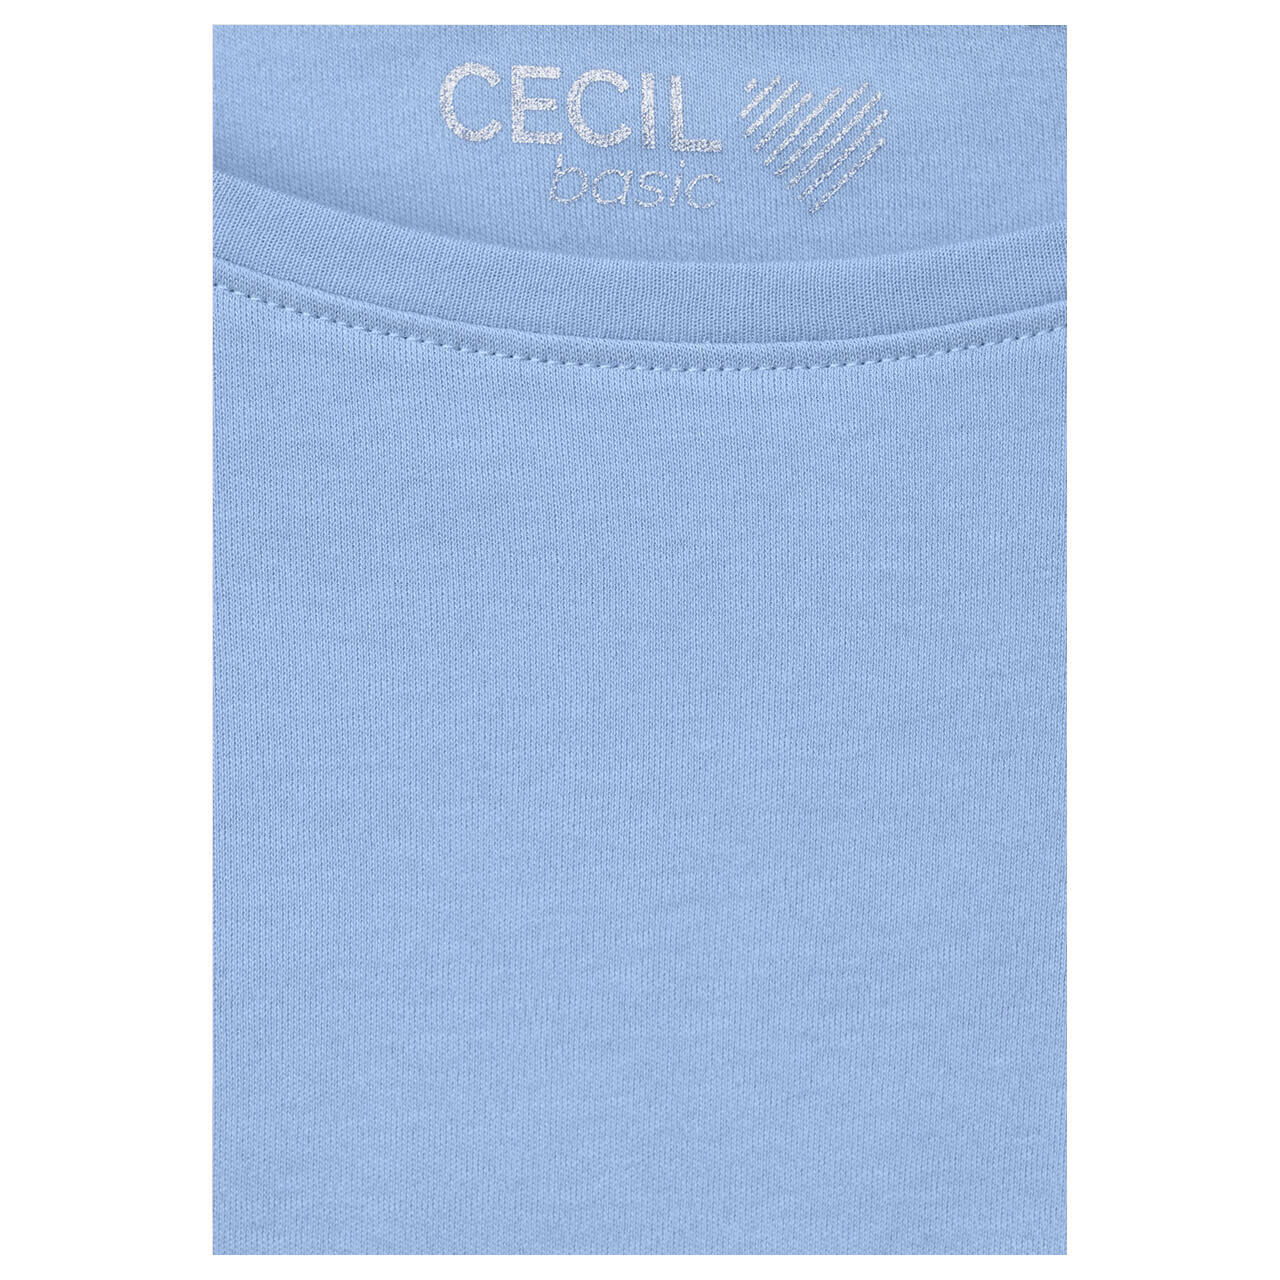 Cecil Damen 3/4 Arm Shirt Basic Boatneck soda blue